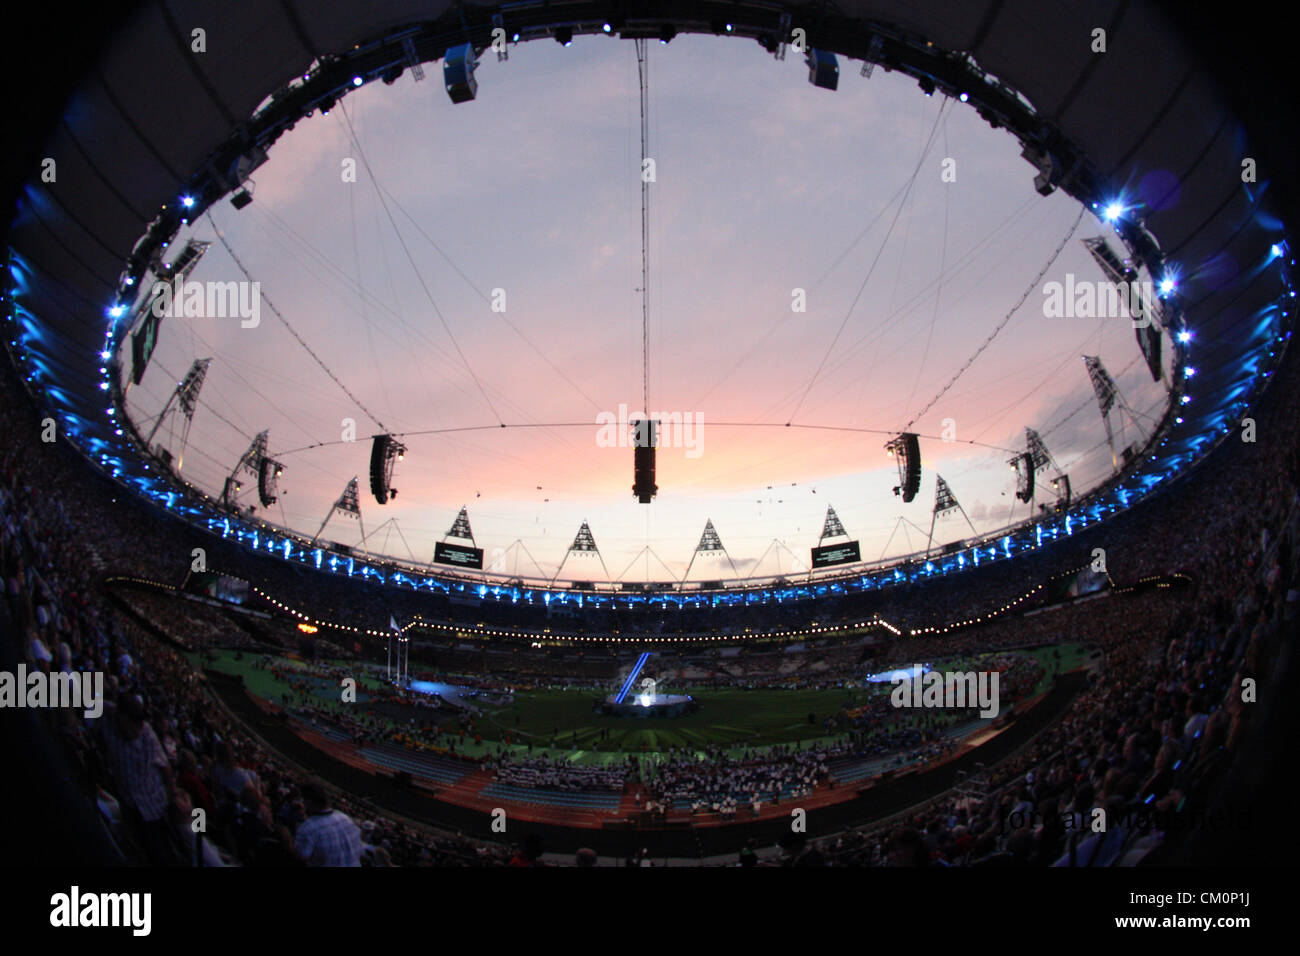 9.09.2012 Londres, Angleterre. Le stade olympique d'avance ce soir la cérémonie de clôture des Jeux Paralympiques de Londres 2012 Banque D'Images